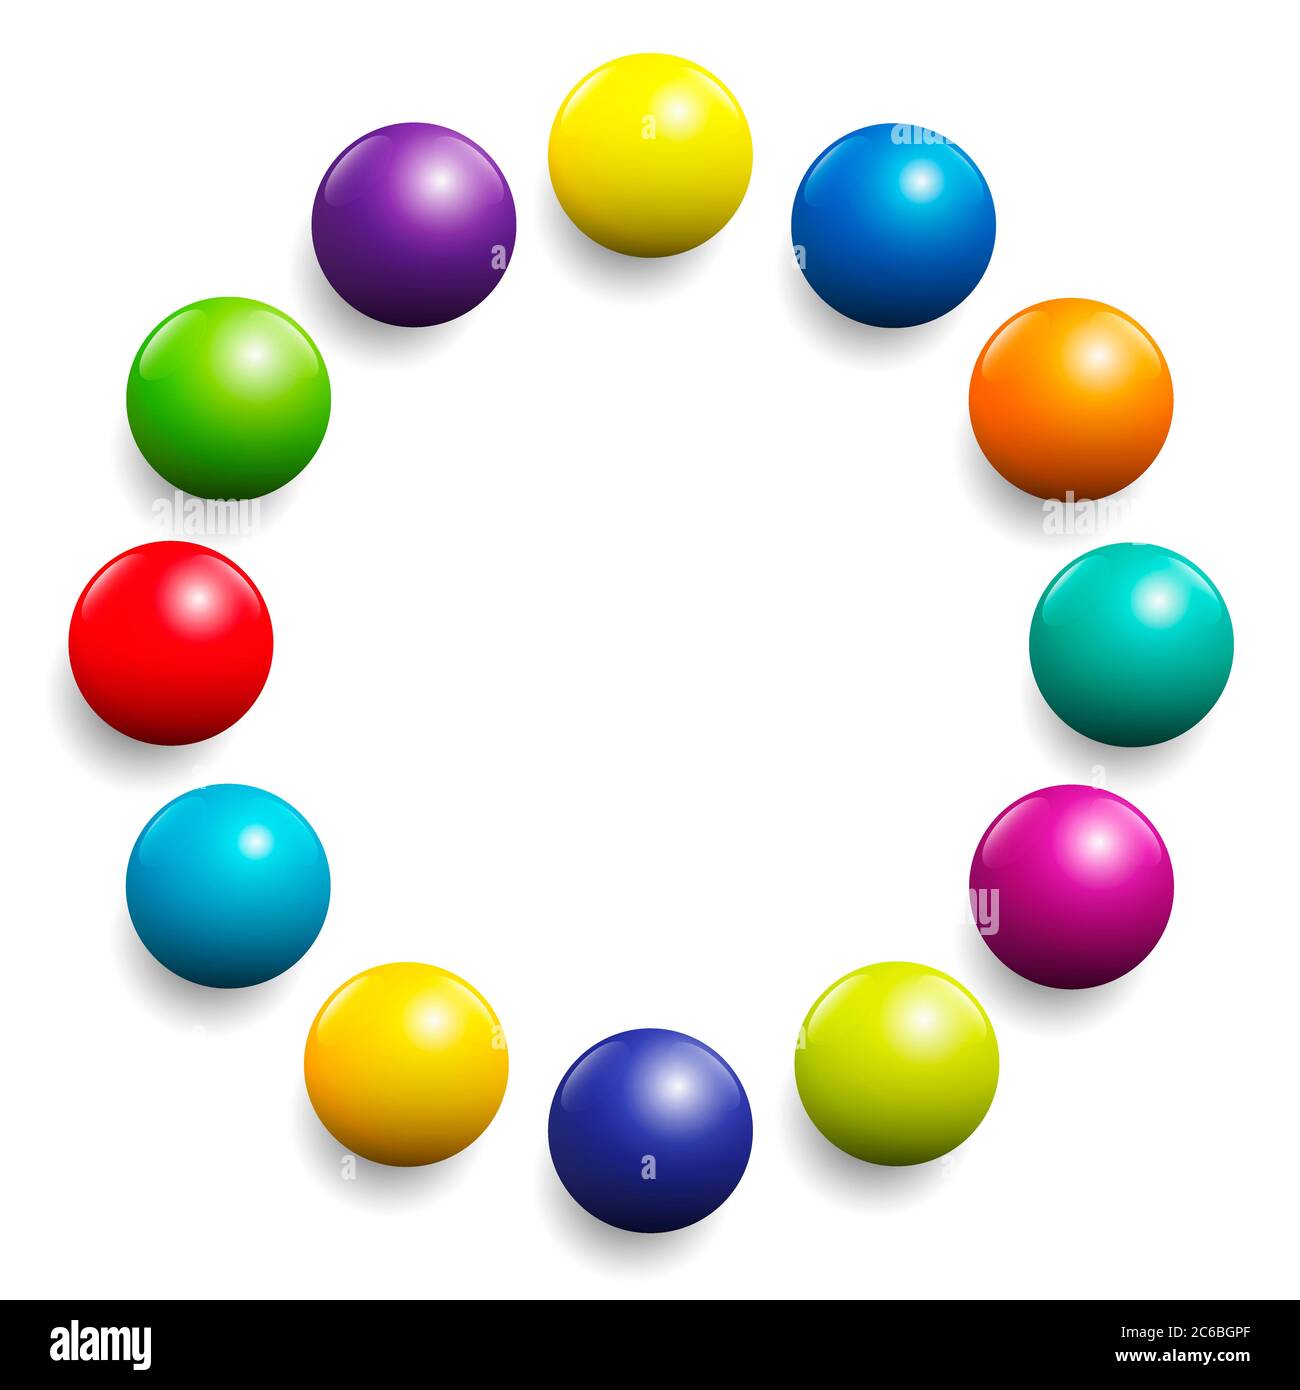 Bunte Kugel Kreis. Sehr glänzendes Farbspektrum, das von zwölf Kugeln gebildet wird - Illustration auf weißem Hintergrund. Stockfoto